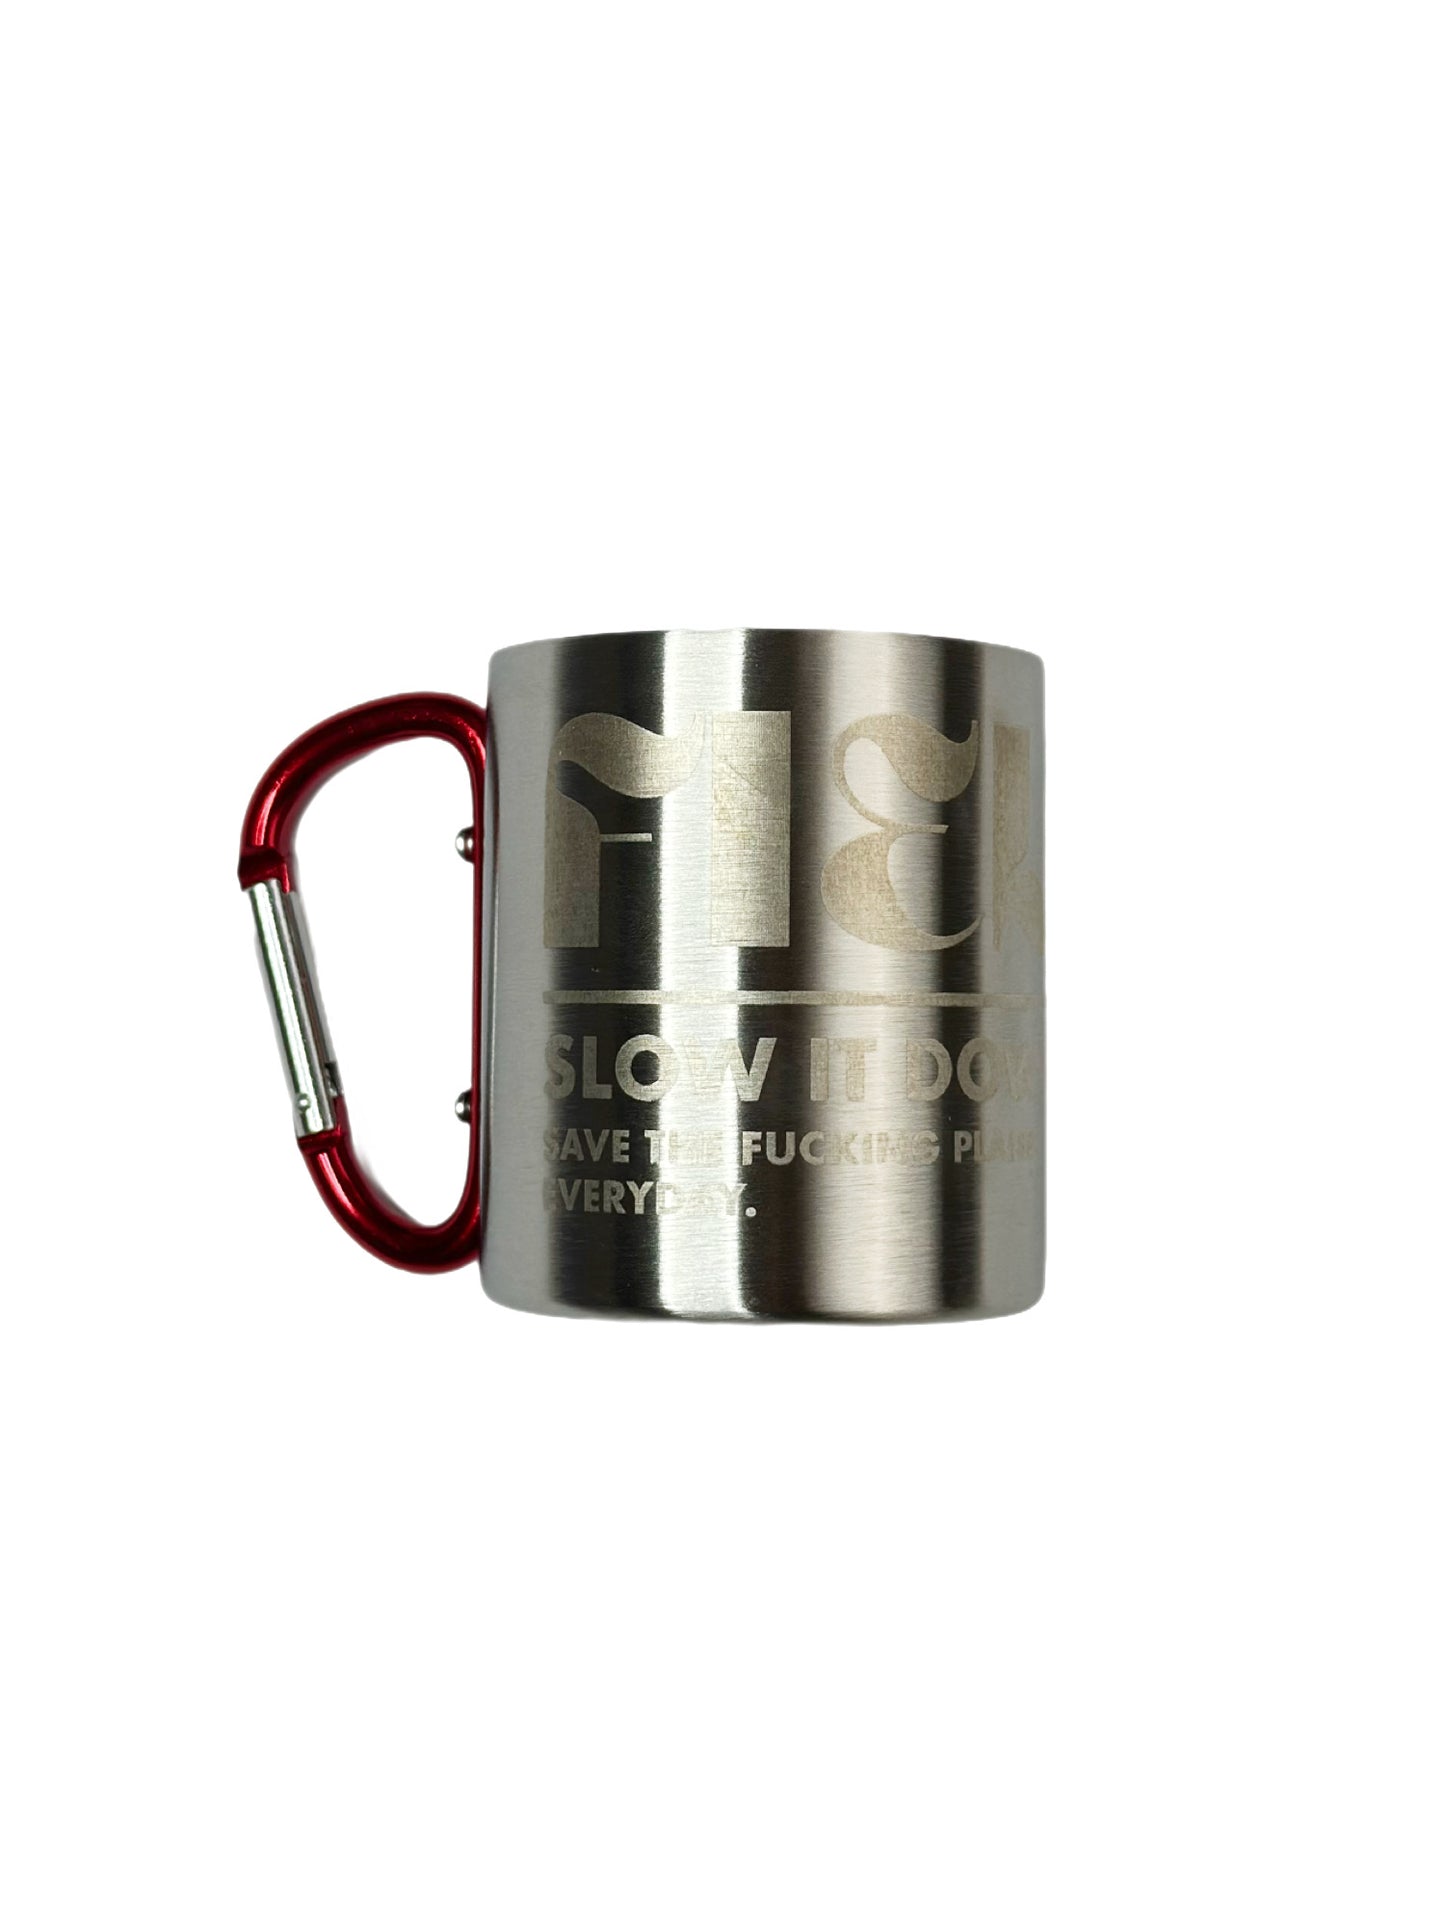 ‘Original’ Carabiner Mug